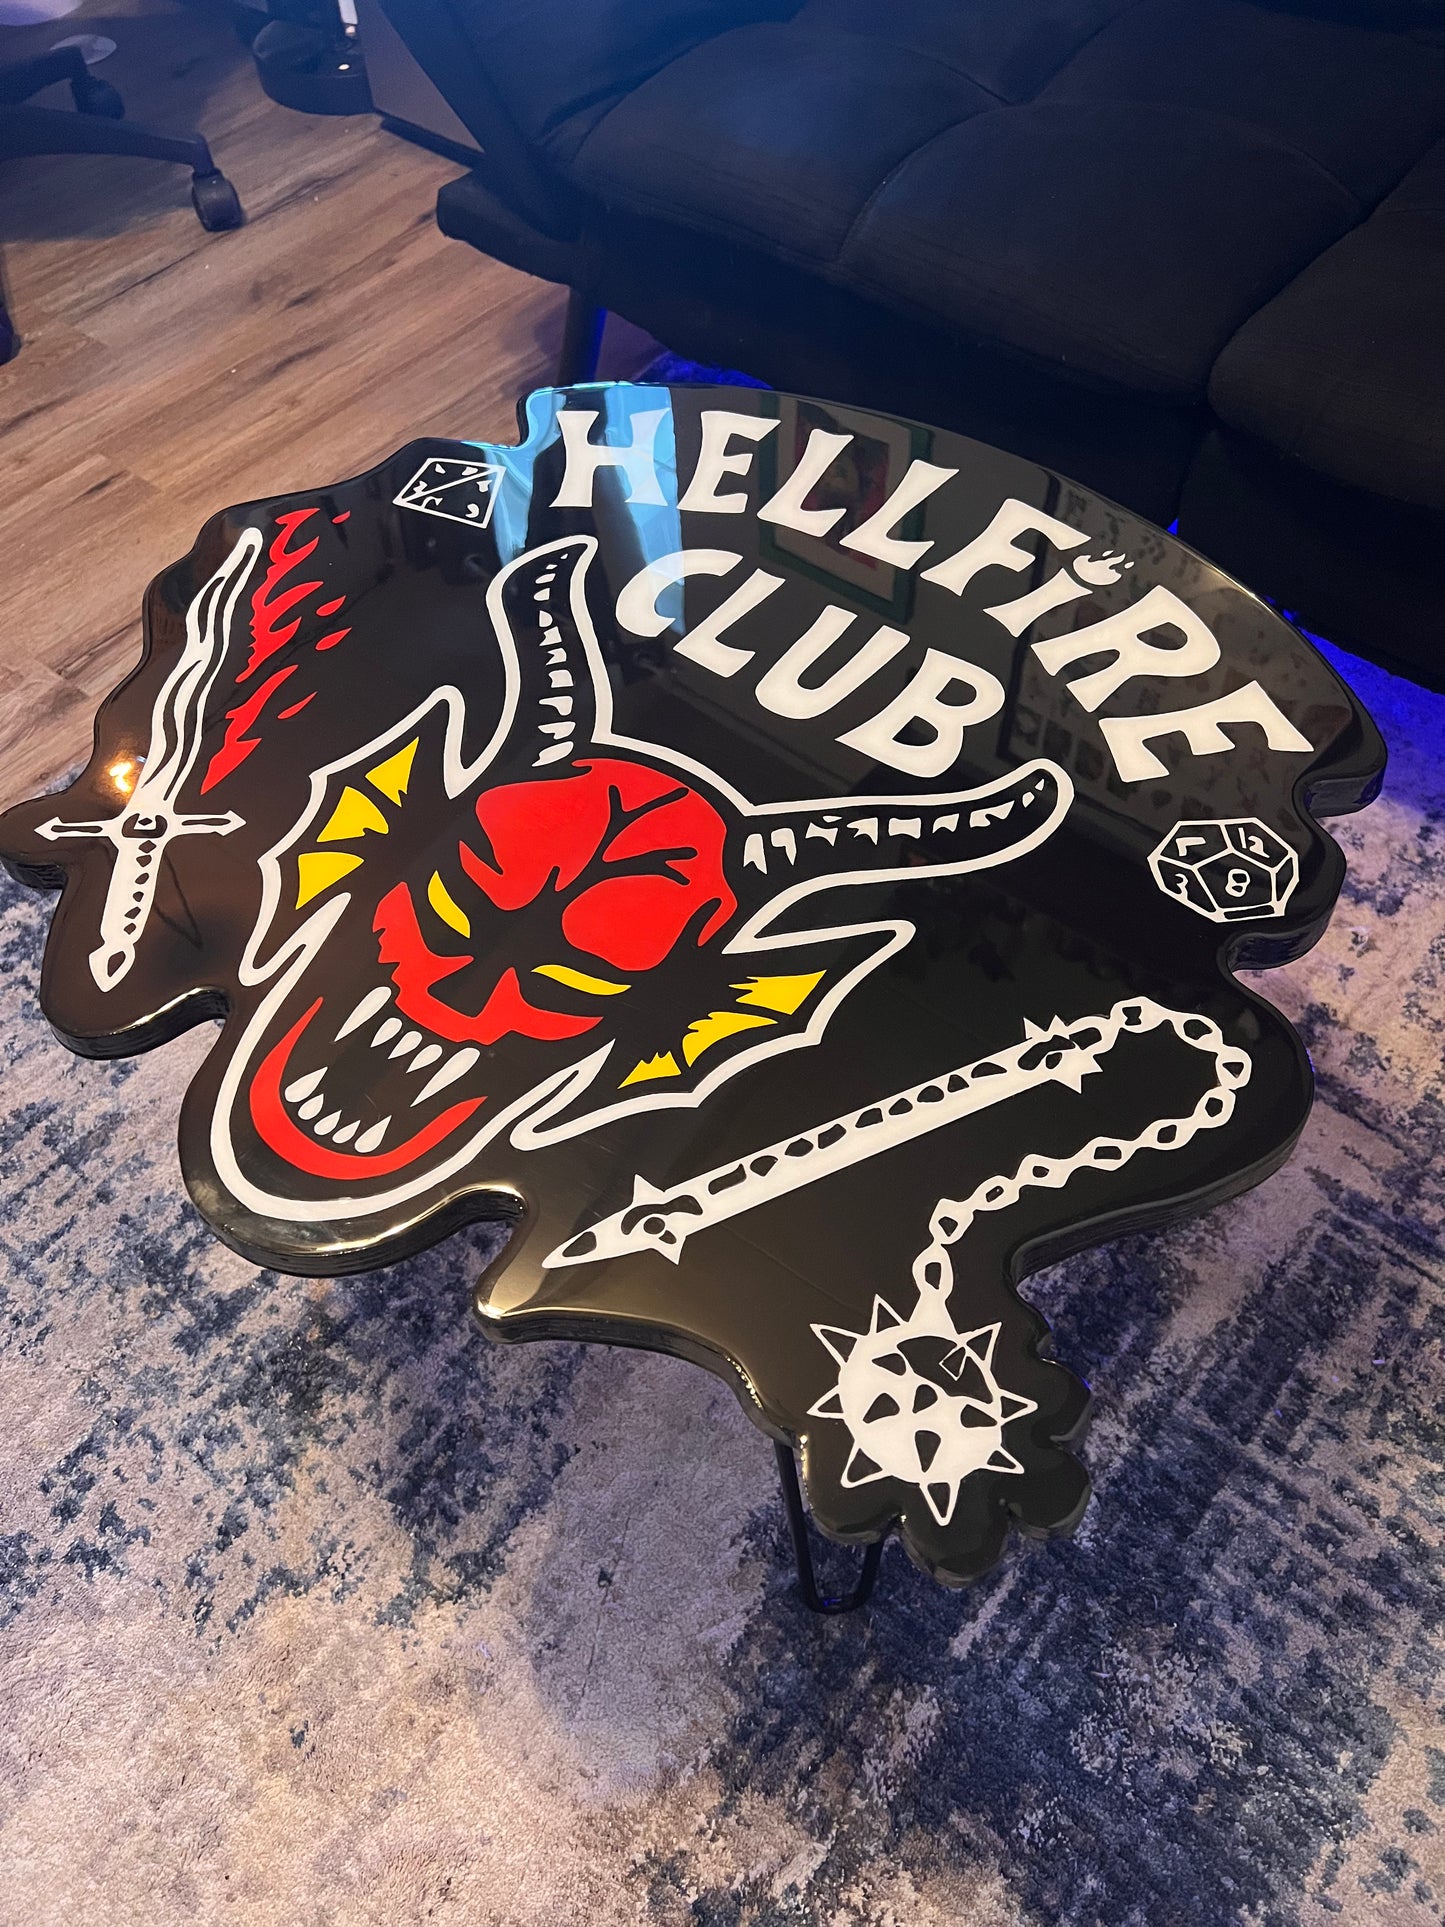 Hellfire Club Coffee Table